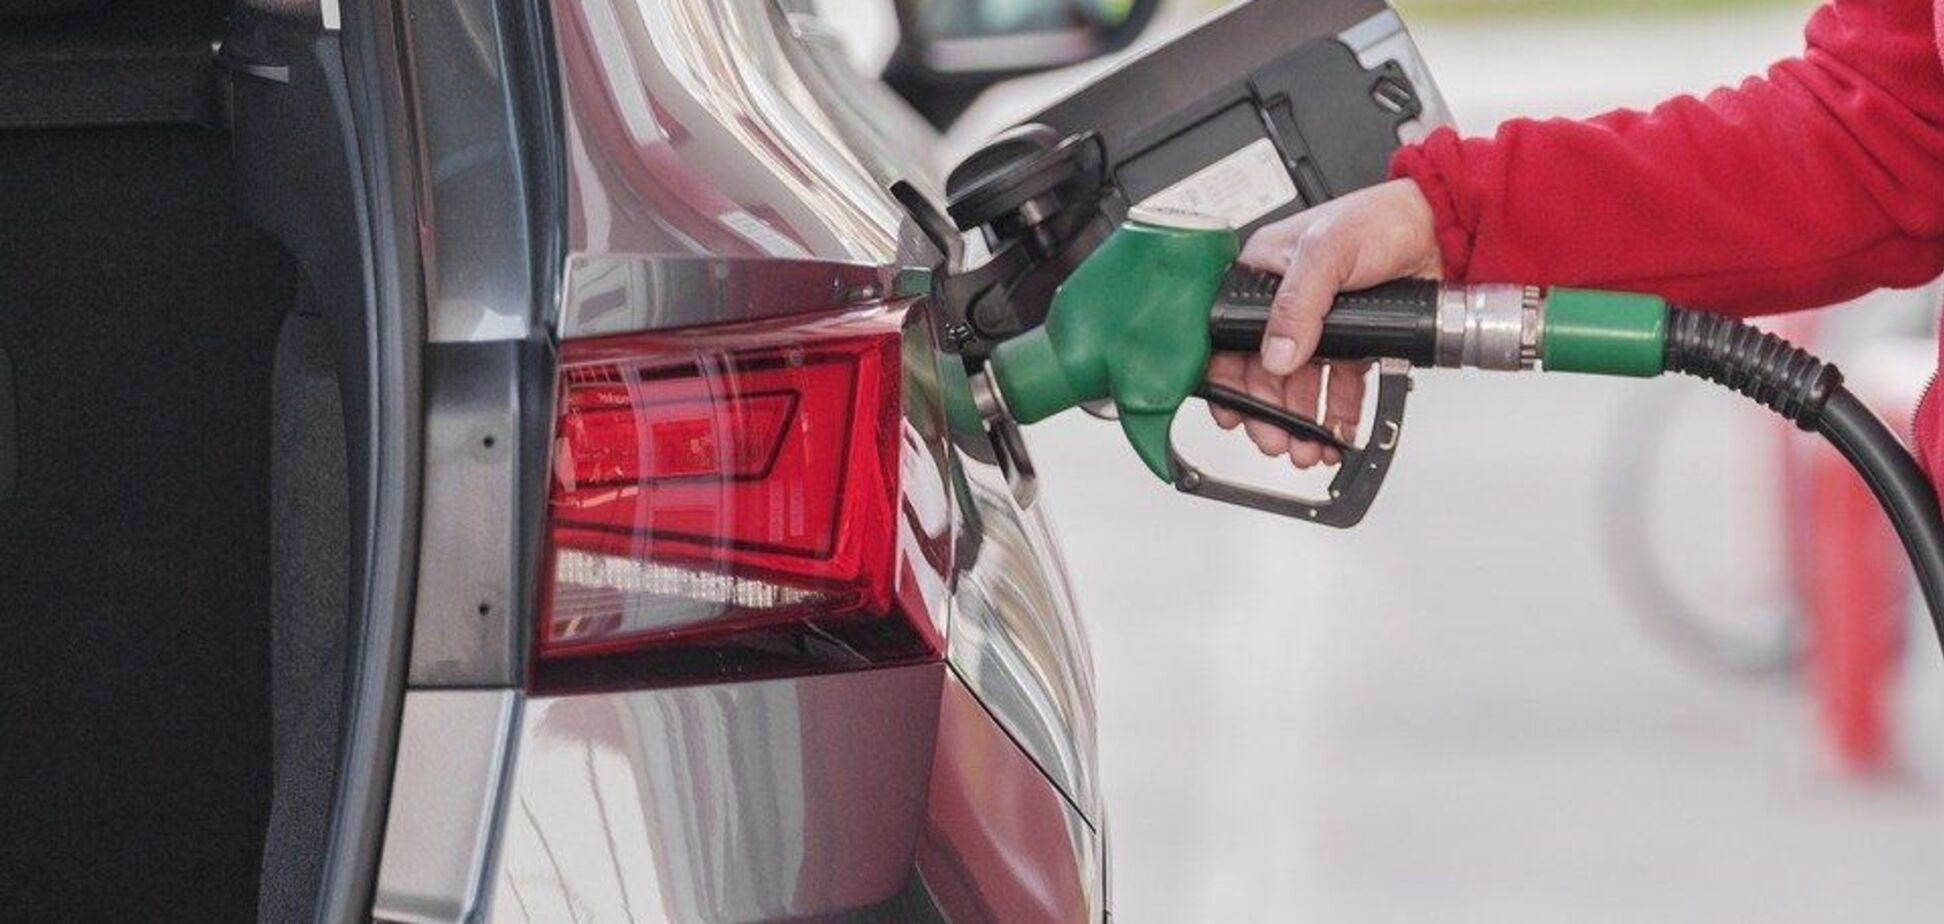 Які лайфхаки про економію бензину не є правдивими